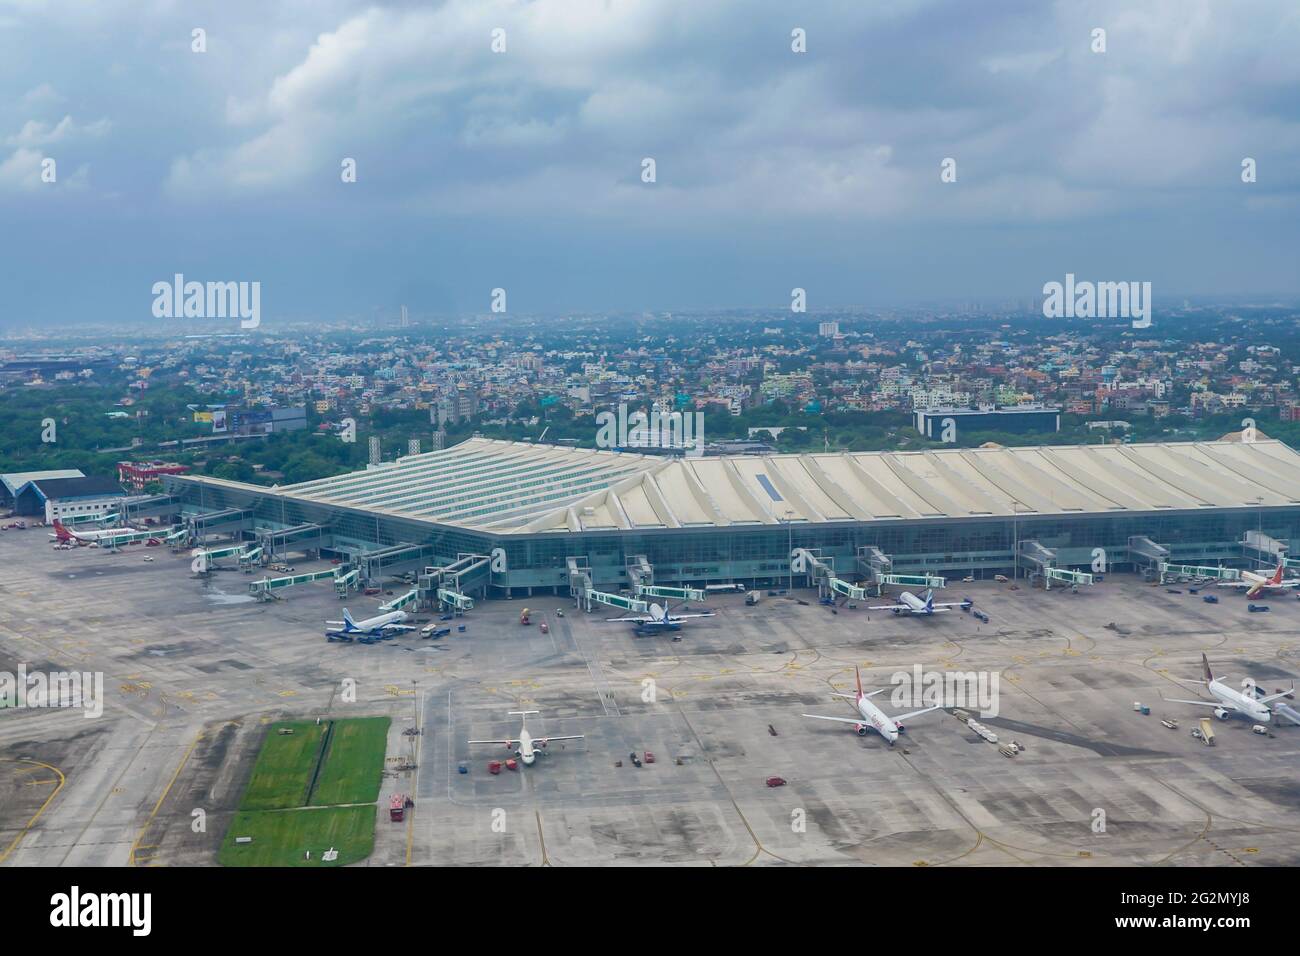 Arial View of Dum Dum Airport Netaji Subhash Chandra Bose International Airport Kolkata, West Bengal - India. Stock Photo